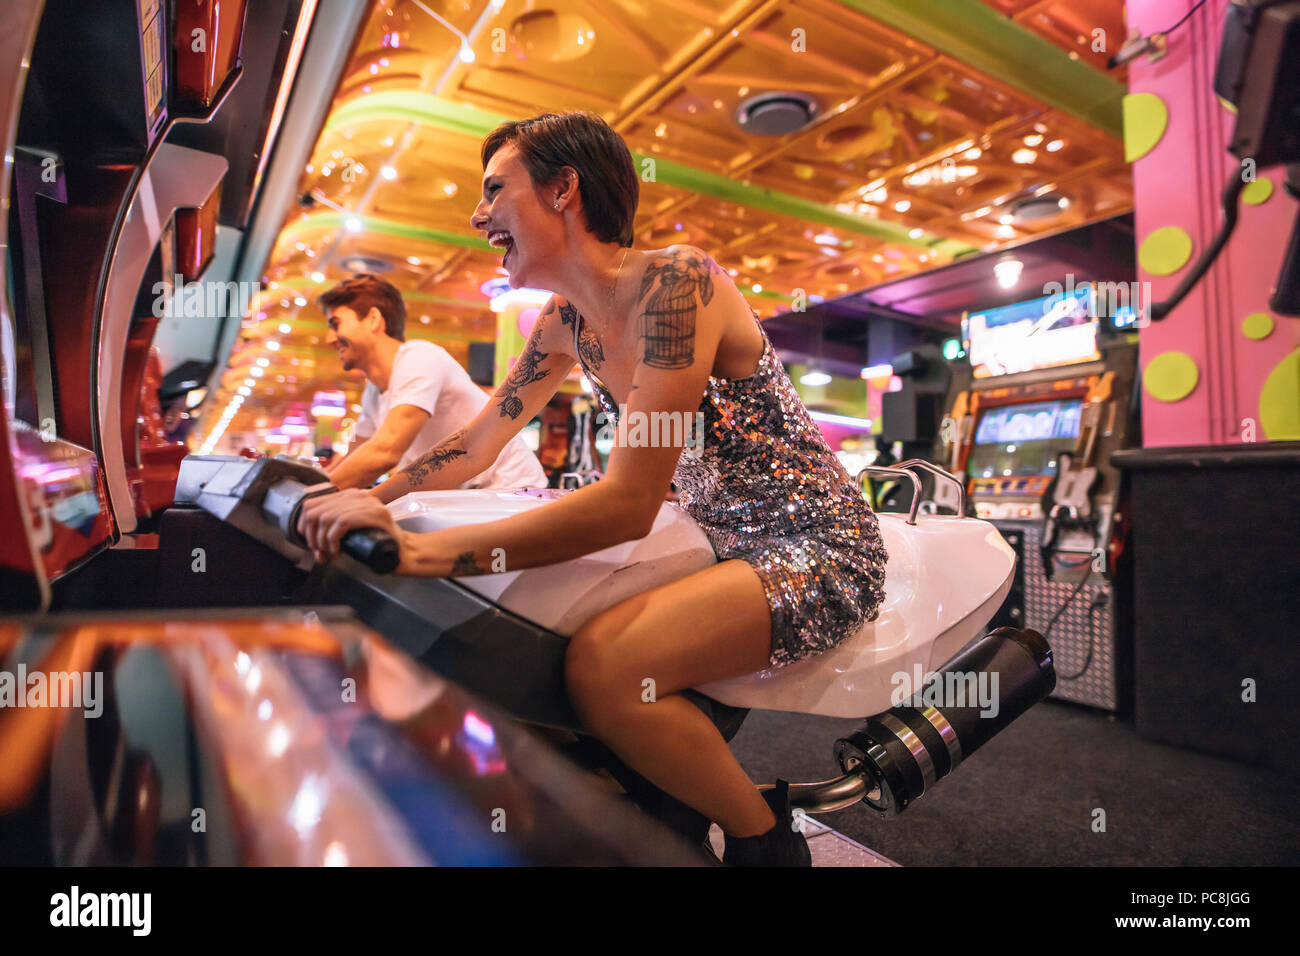 Glückliches Paar Spaß spielen arcade racing Spiele zu spielen. Aufgeregt Frau spielen ein Rennspiel auf einem Arcade Racing Bike. Stockfoto